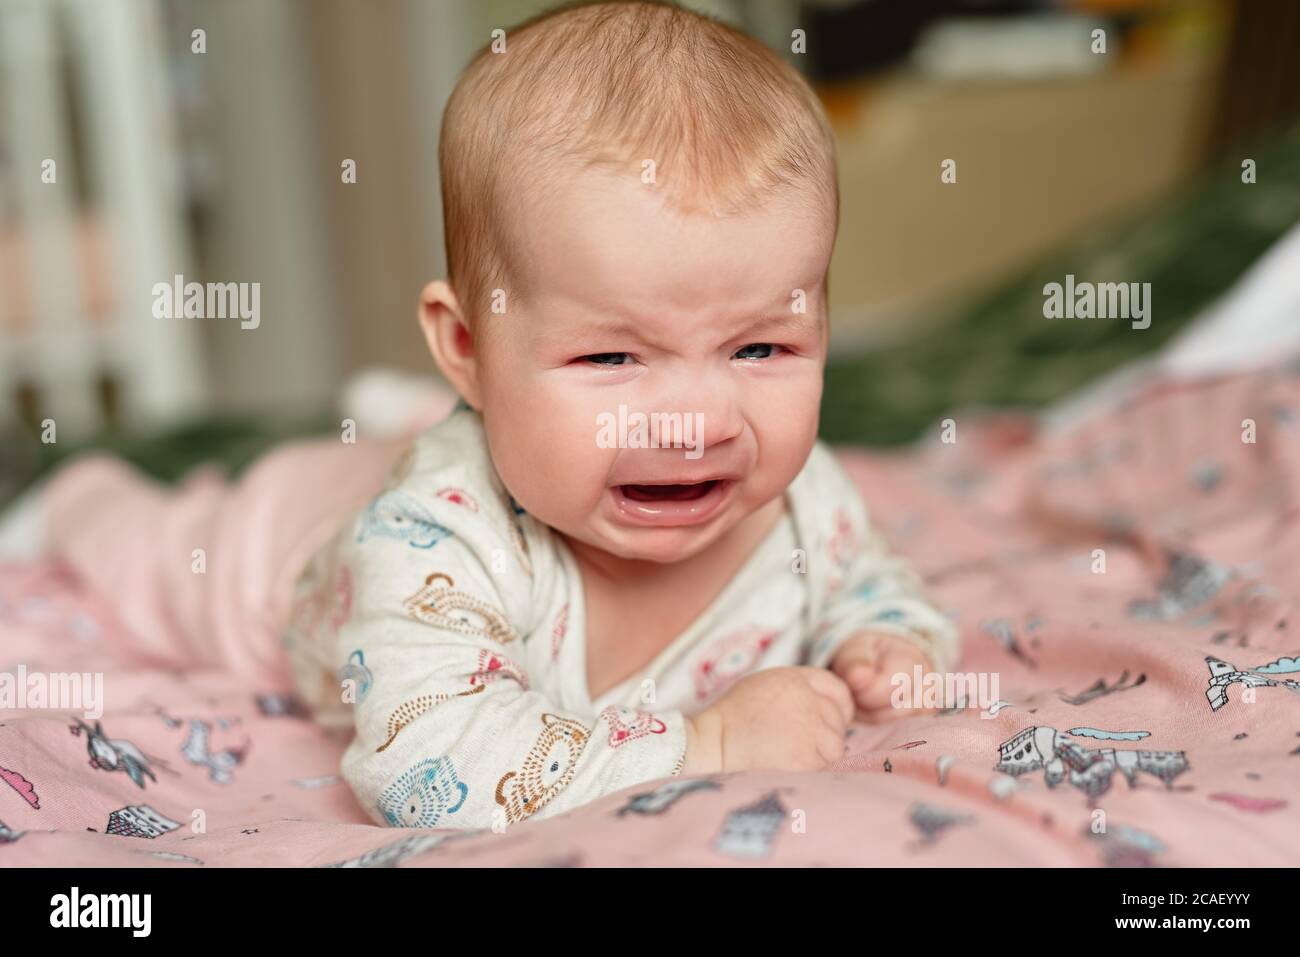 Drei Monate altes Mädchen weinend, liegt auf dem Bauch und ist sehr aufgeregt, traurige Emotionen im Kind Stockfoto